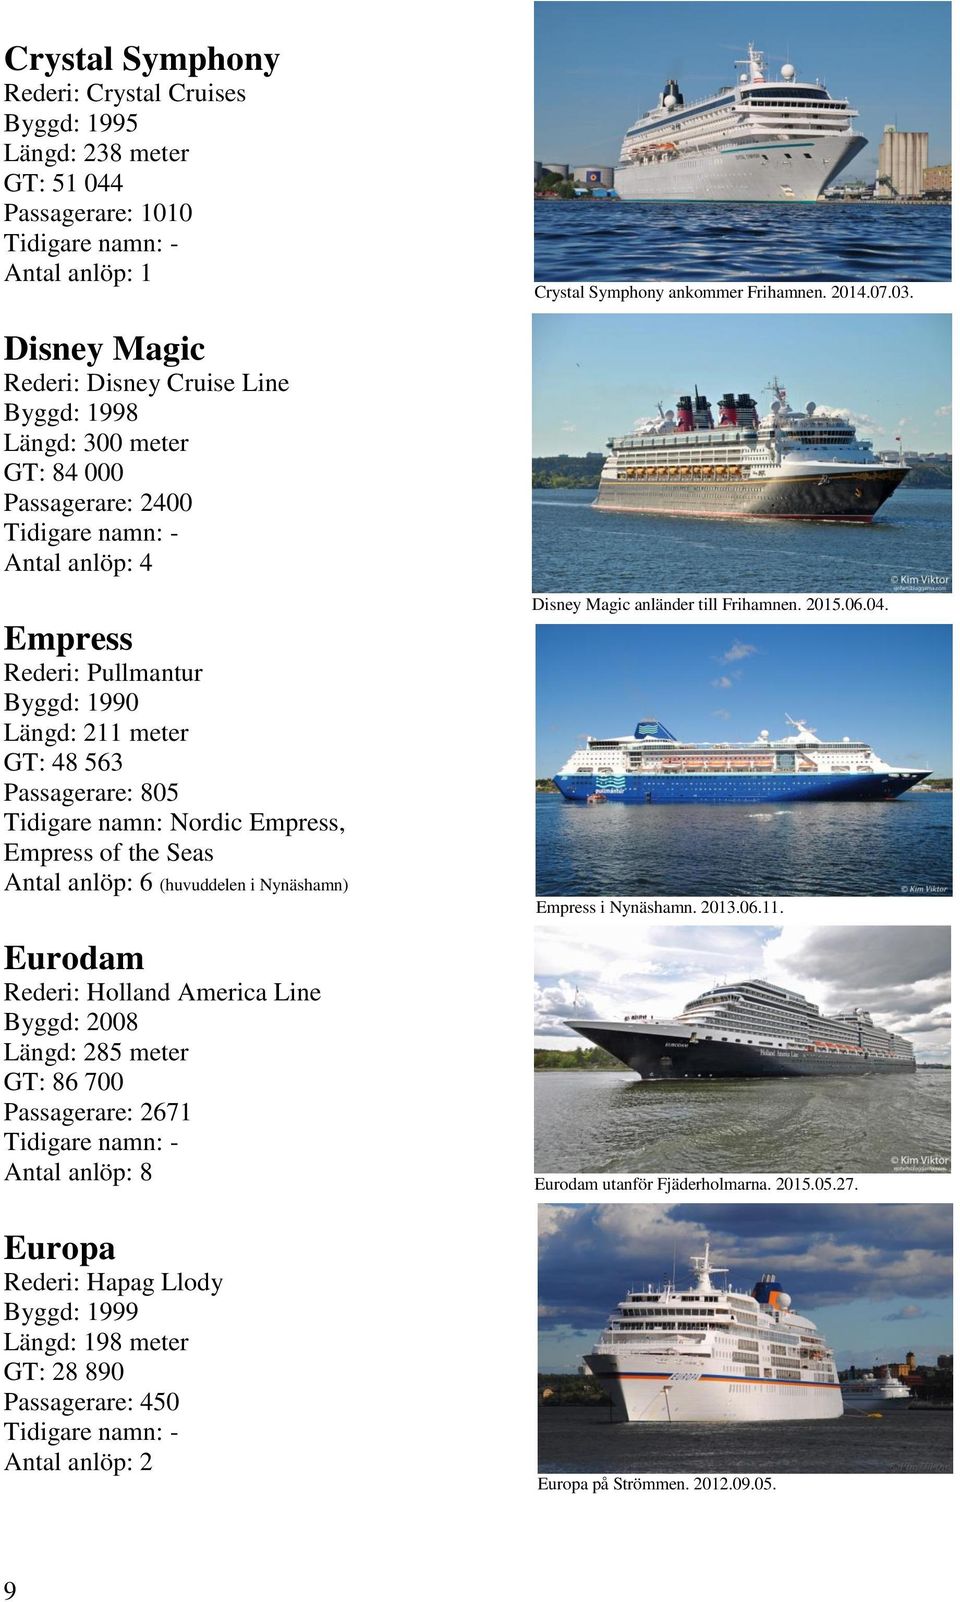 Tidigare namn: Nordic Empress, Empress of the Seas Antal anlöp: 6 (huvuddelen i Nynäshamn) Eurodam Rederi: Holland America Line Byggd: 2008 Längd: 285 meter GT: 86 700 Passagerare: 2671 Antal